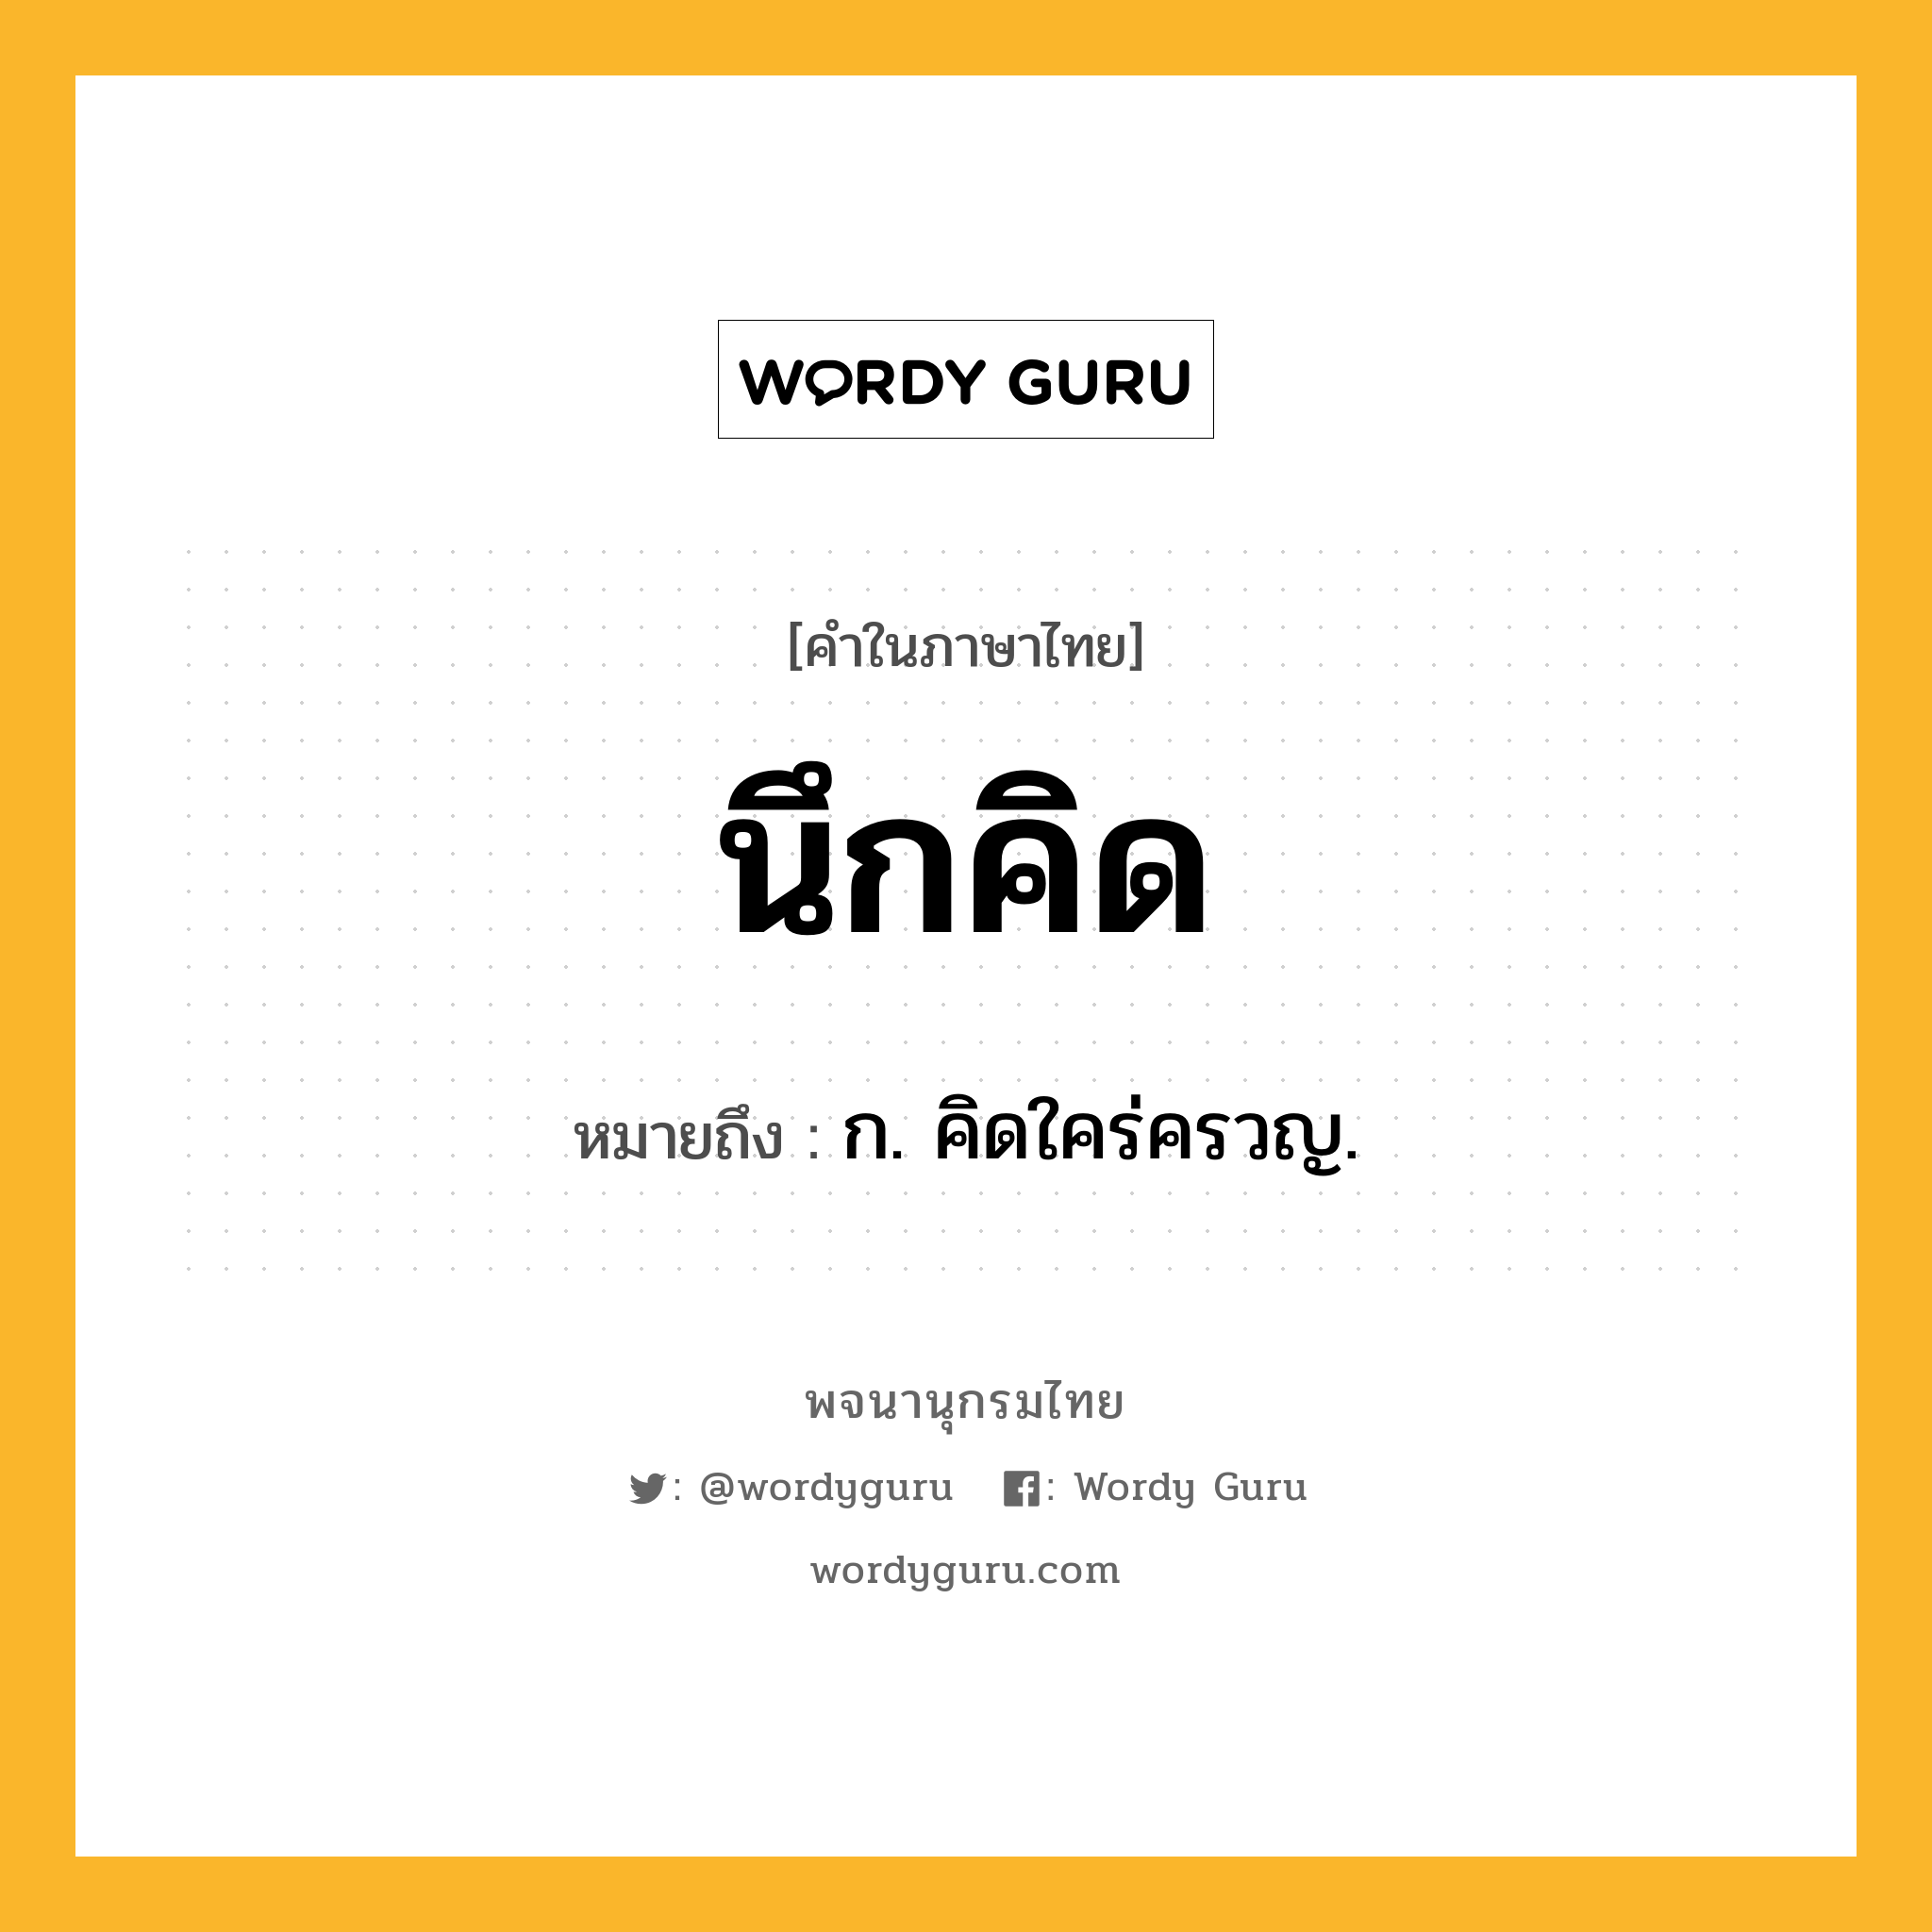 นึกคิด หมายถึงอะไร?, คำในภาษาไทย นึกคิด หมายถึง ก. คิดใคร่ครวญ.